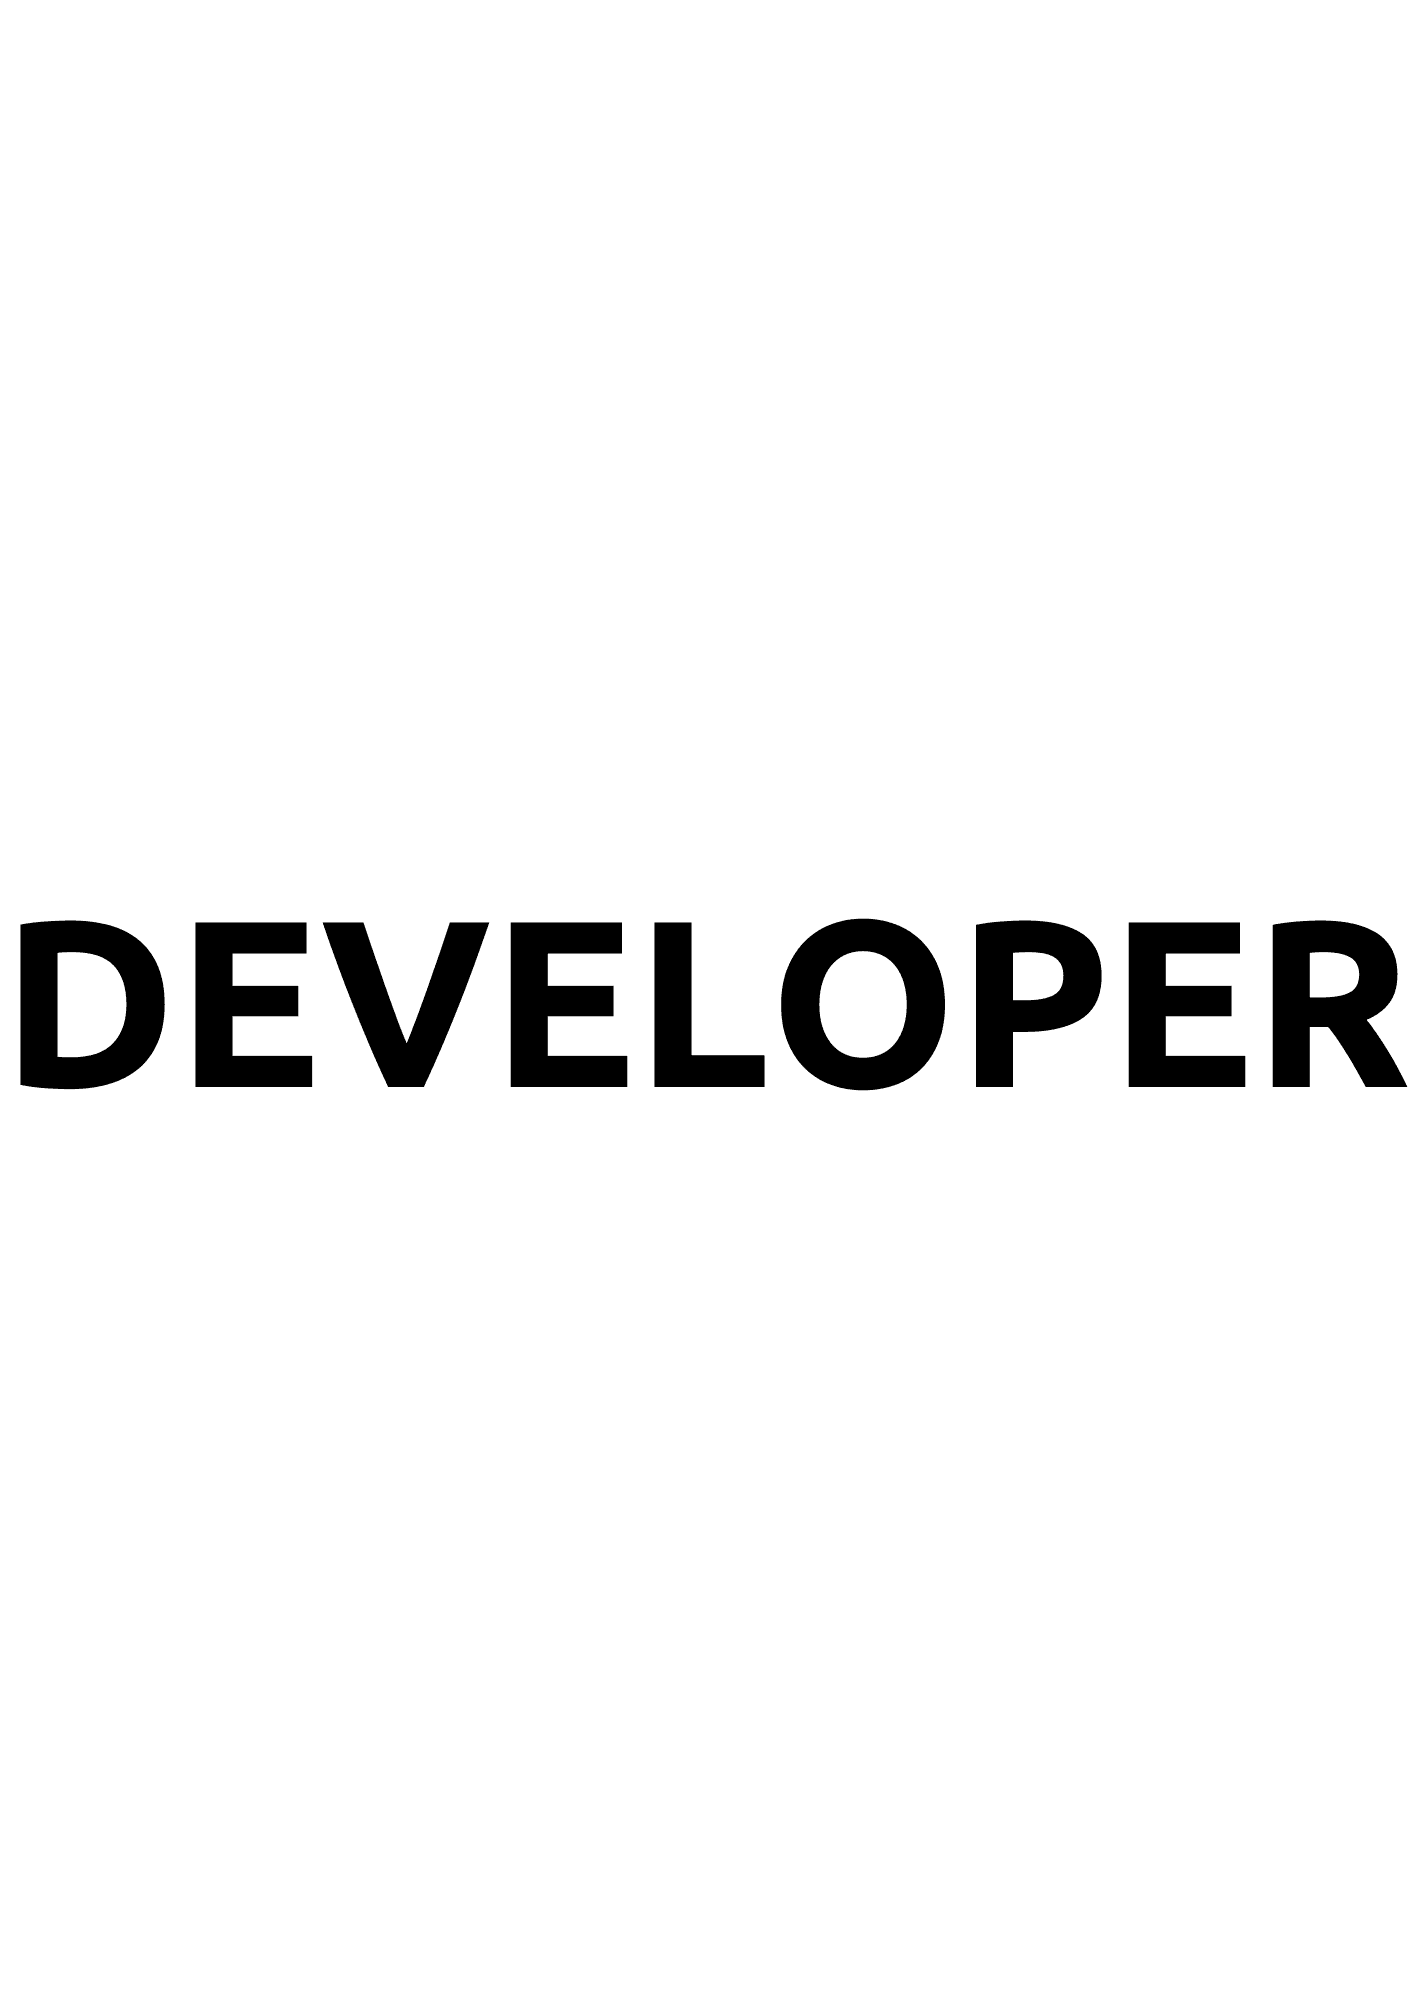 Developer-Team